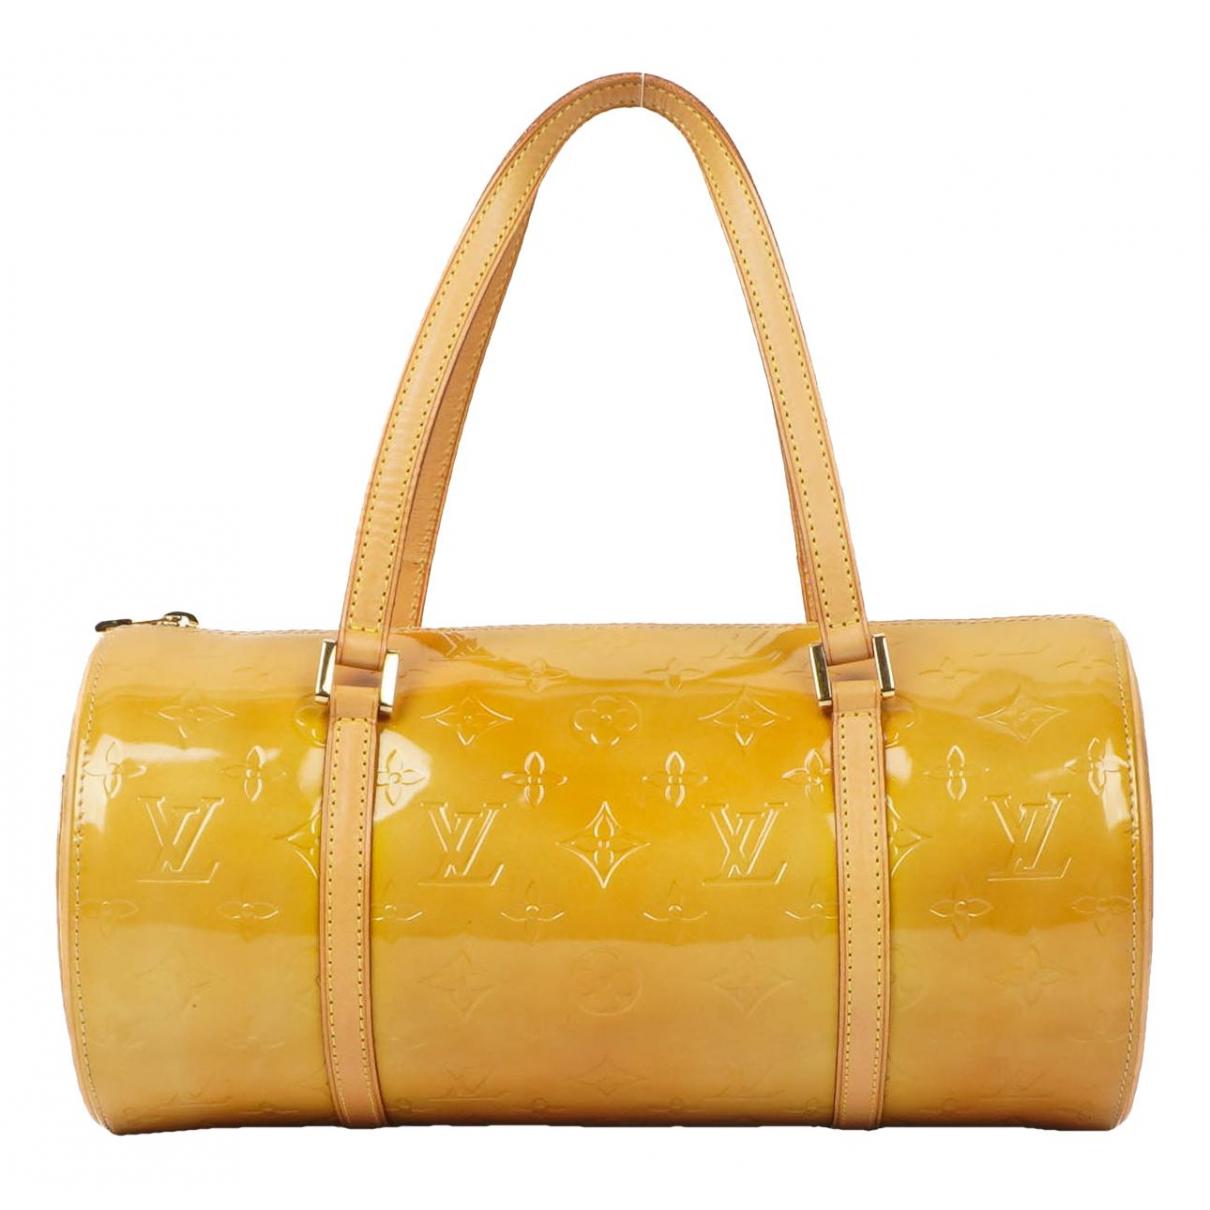 Auth Louis Vuitton Papillon Handbag Tote Bag Enamel yellow Color USED JUNK  sale